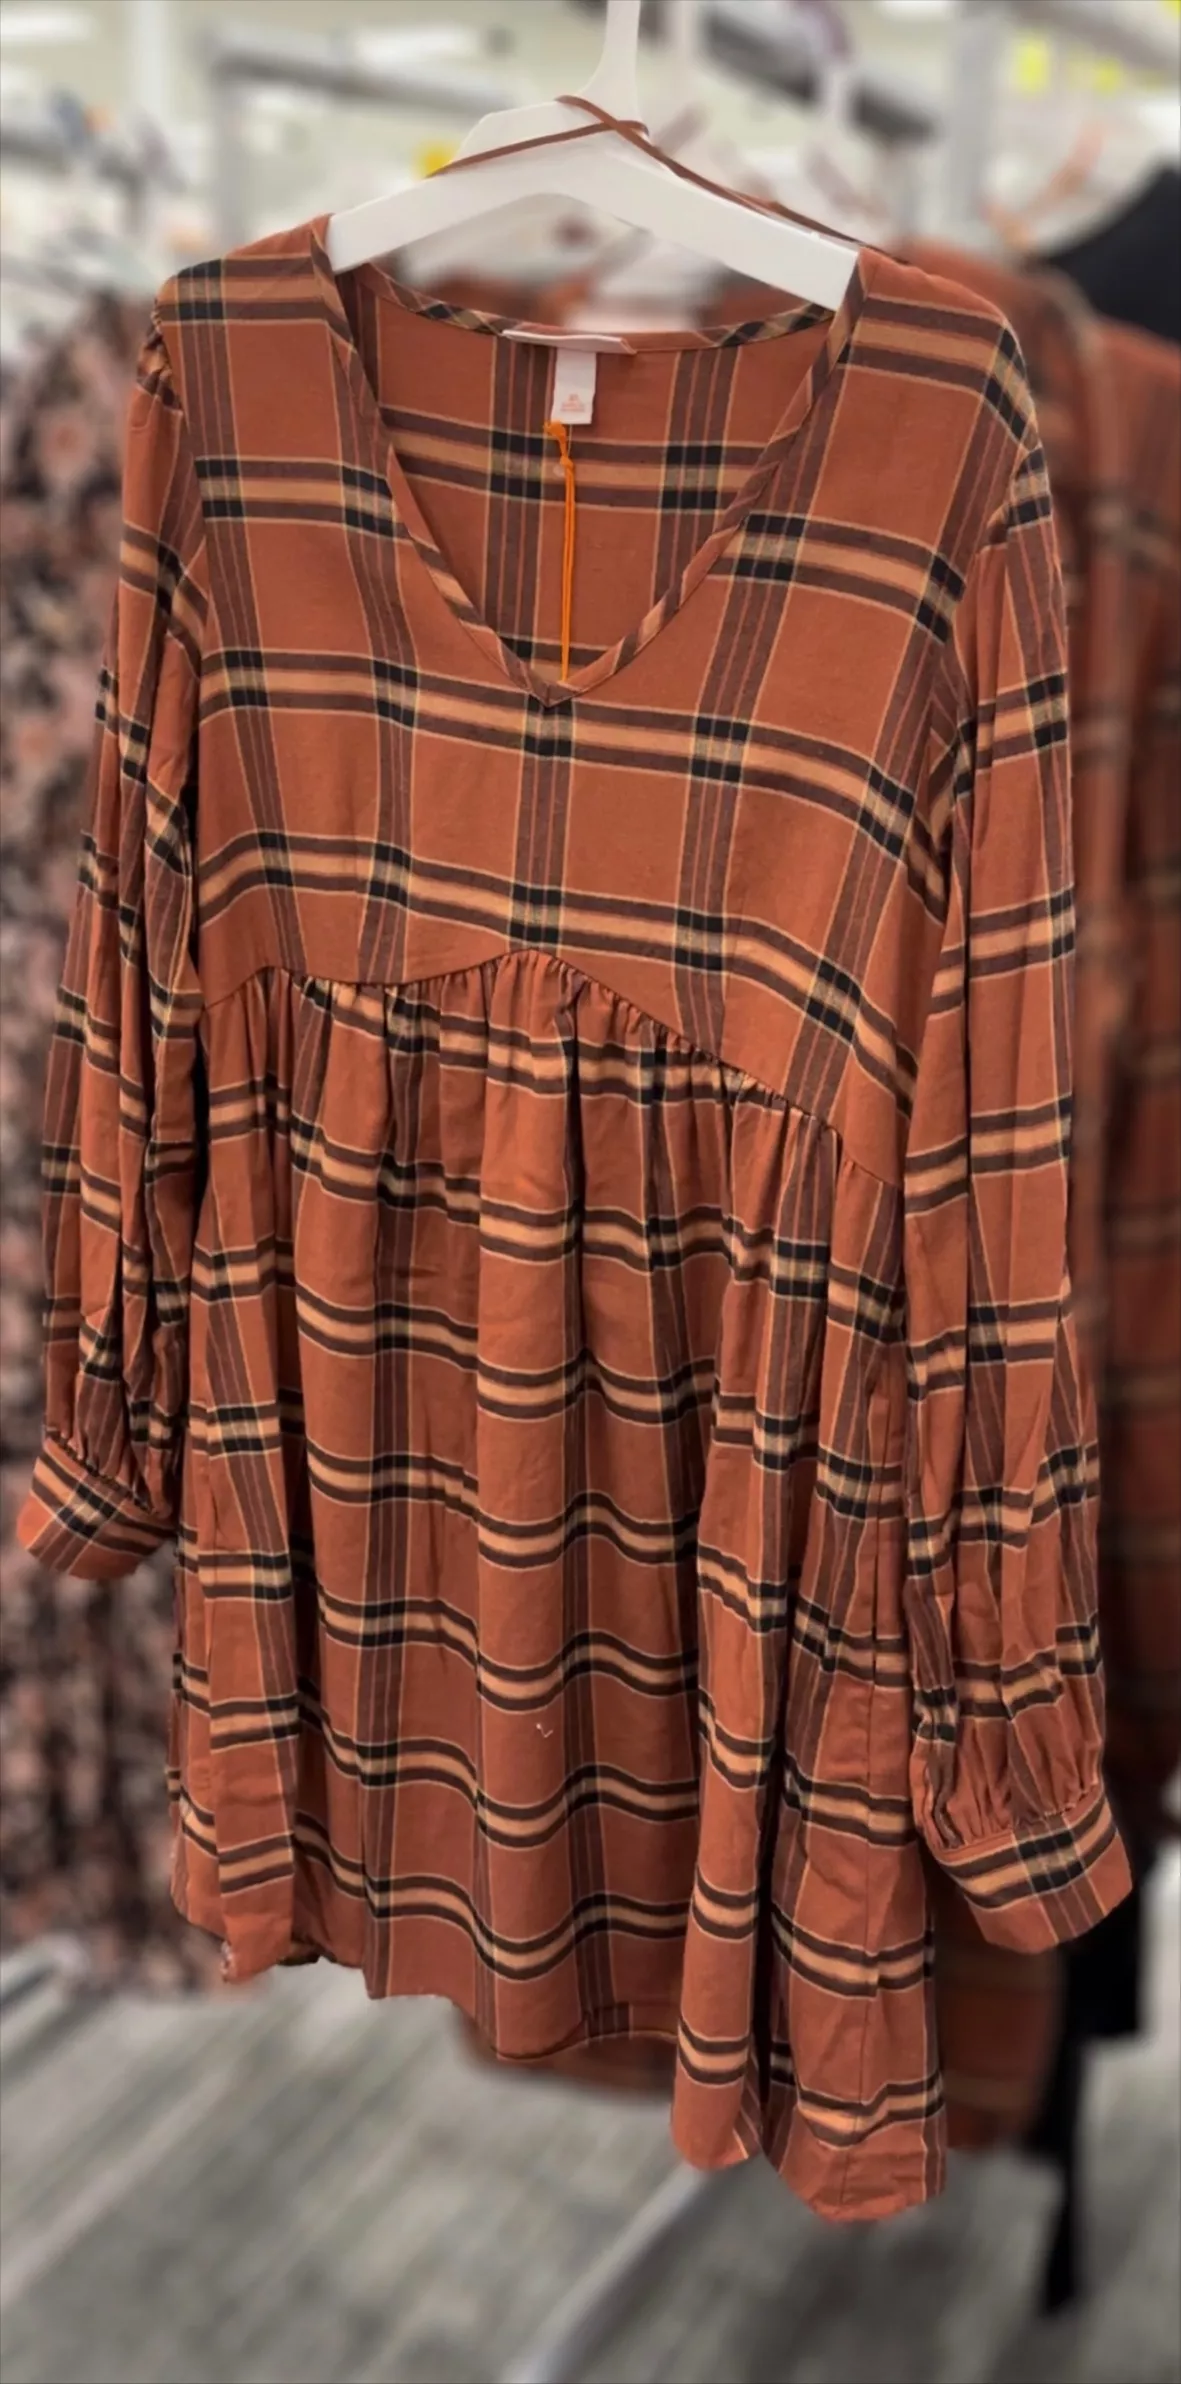 Knox Rose : Women's Clothing & Fashion : Target